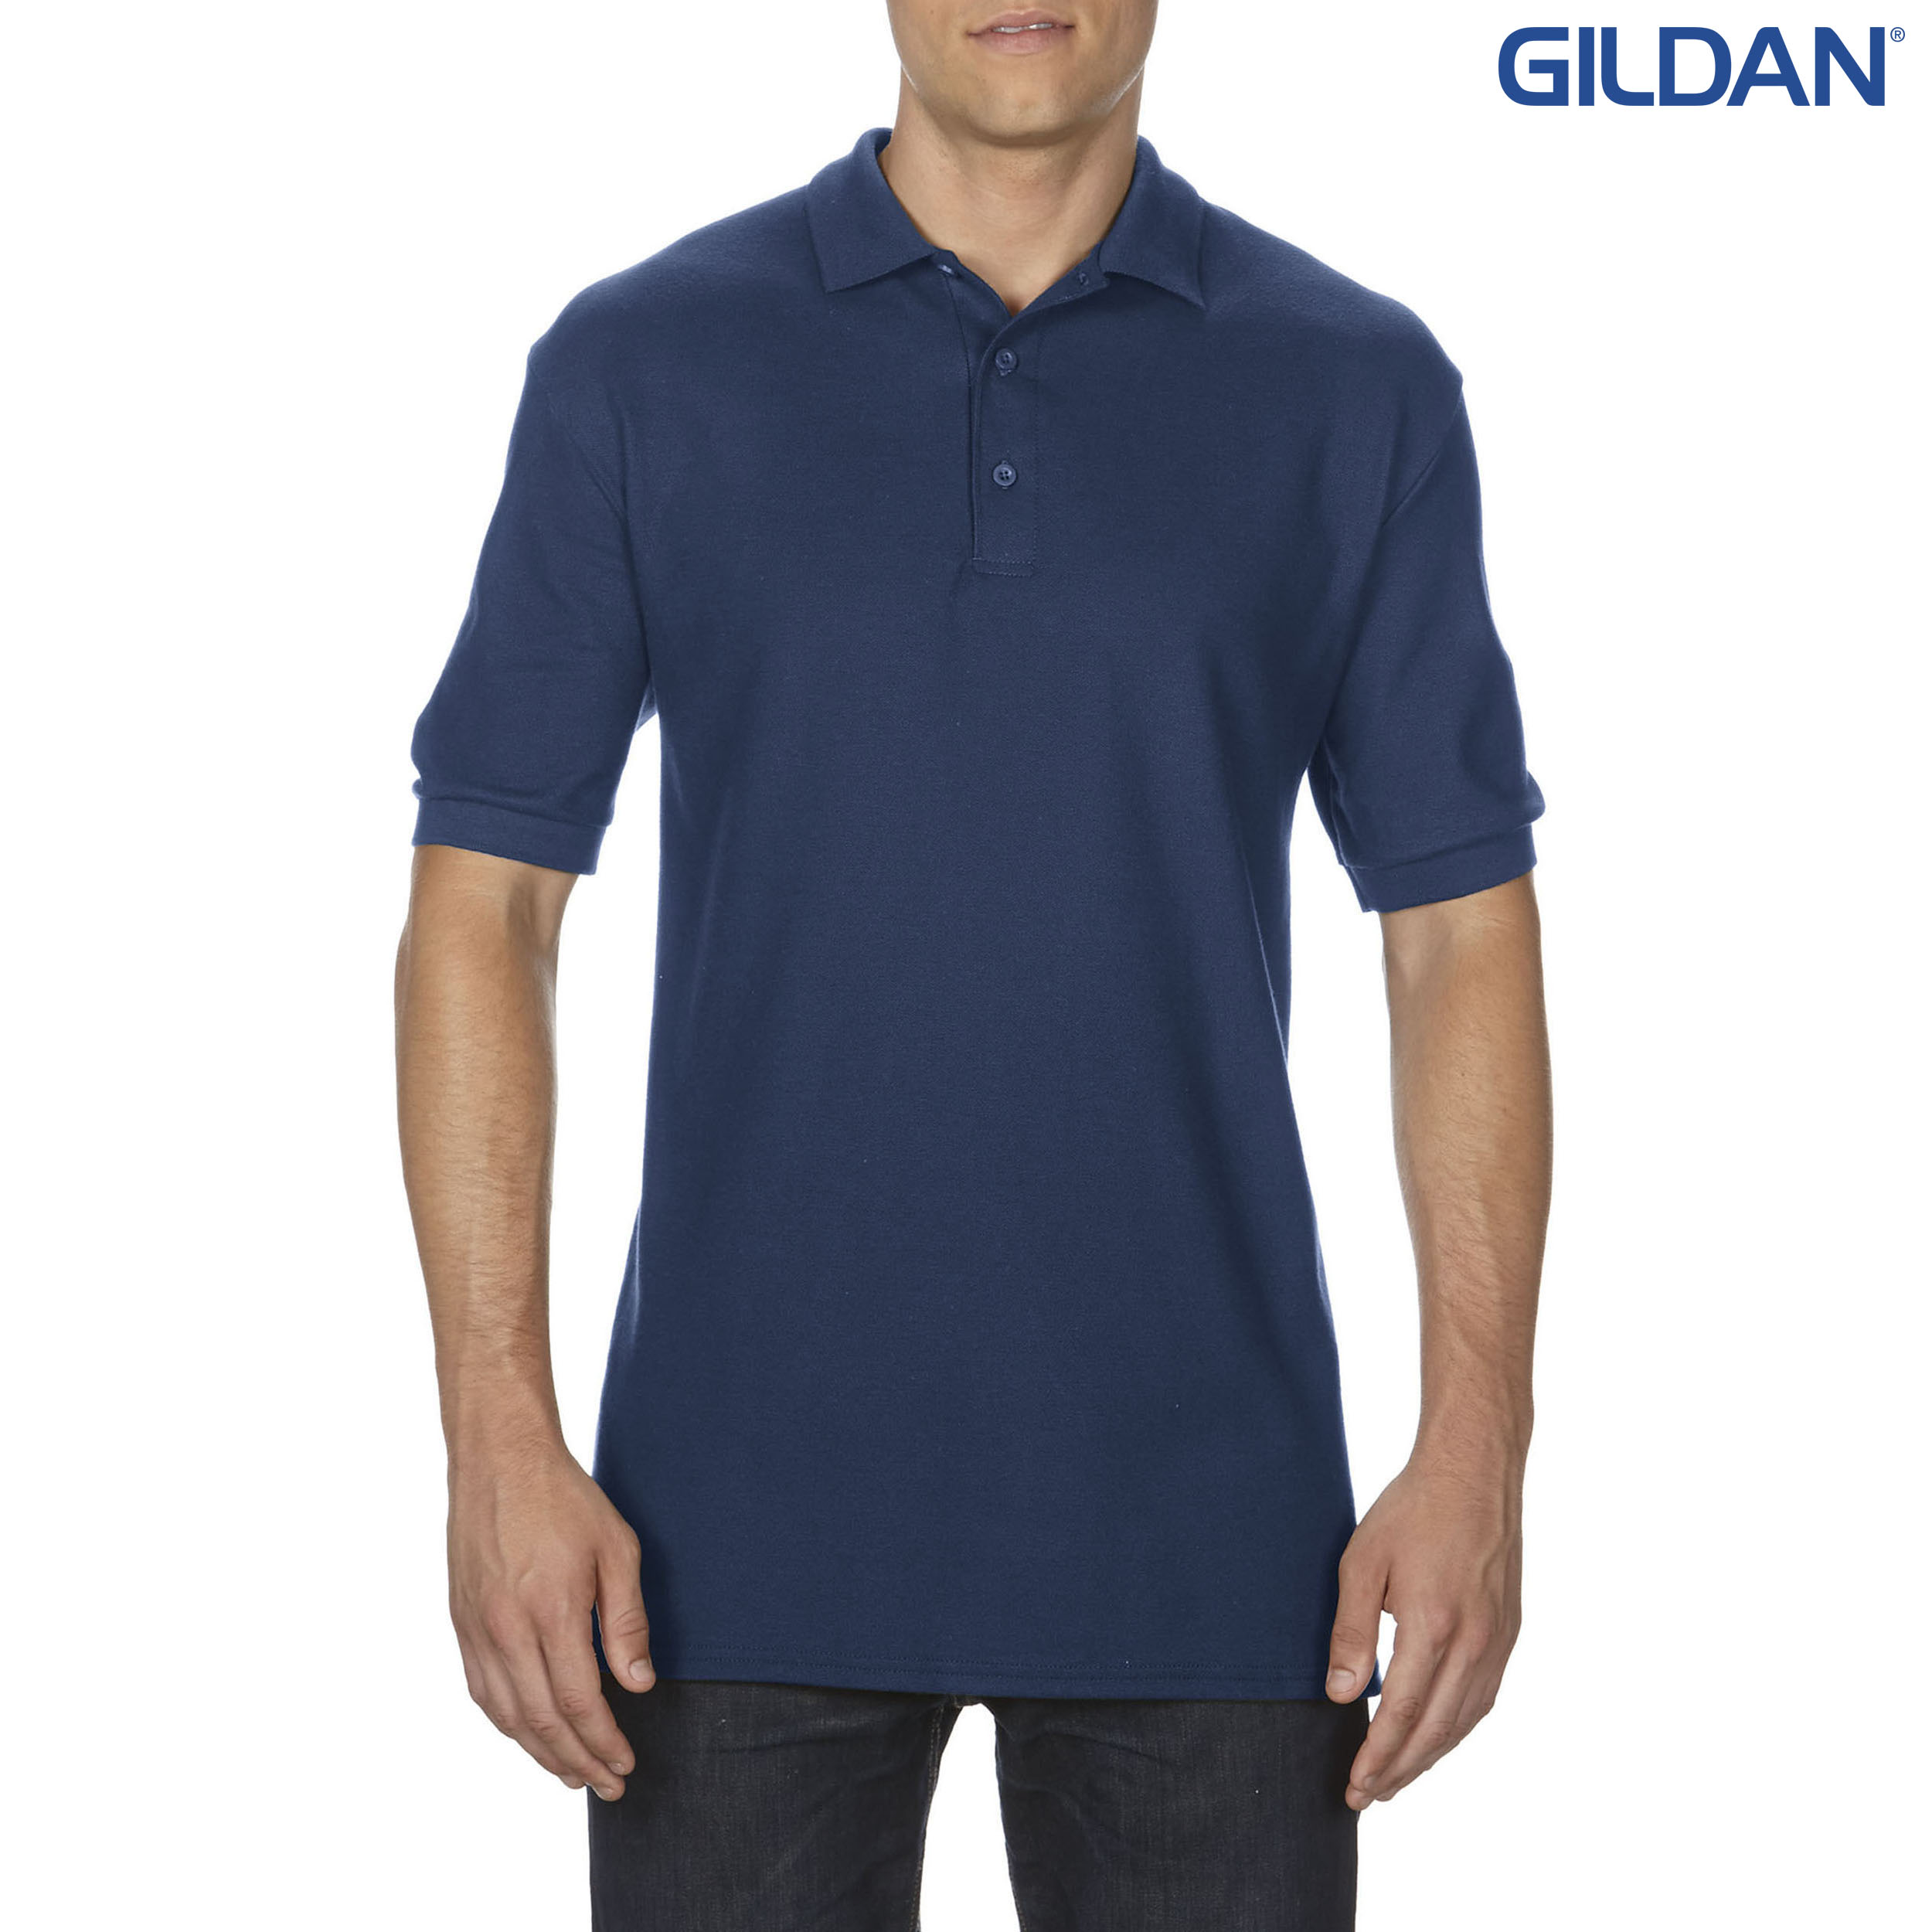 Premium Apparel 82800 Gildan Adult 100% Cotton Double Pique Polo